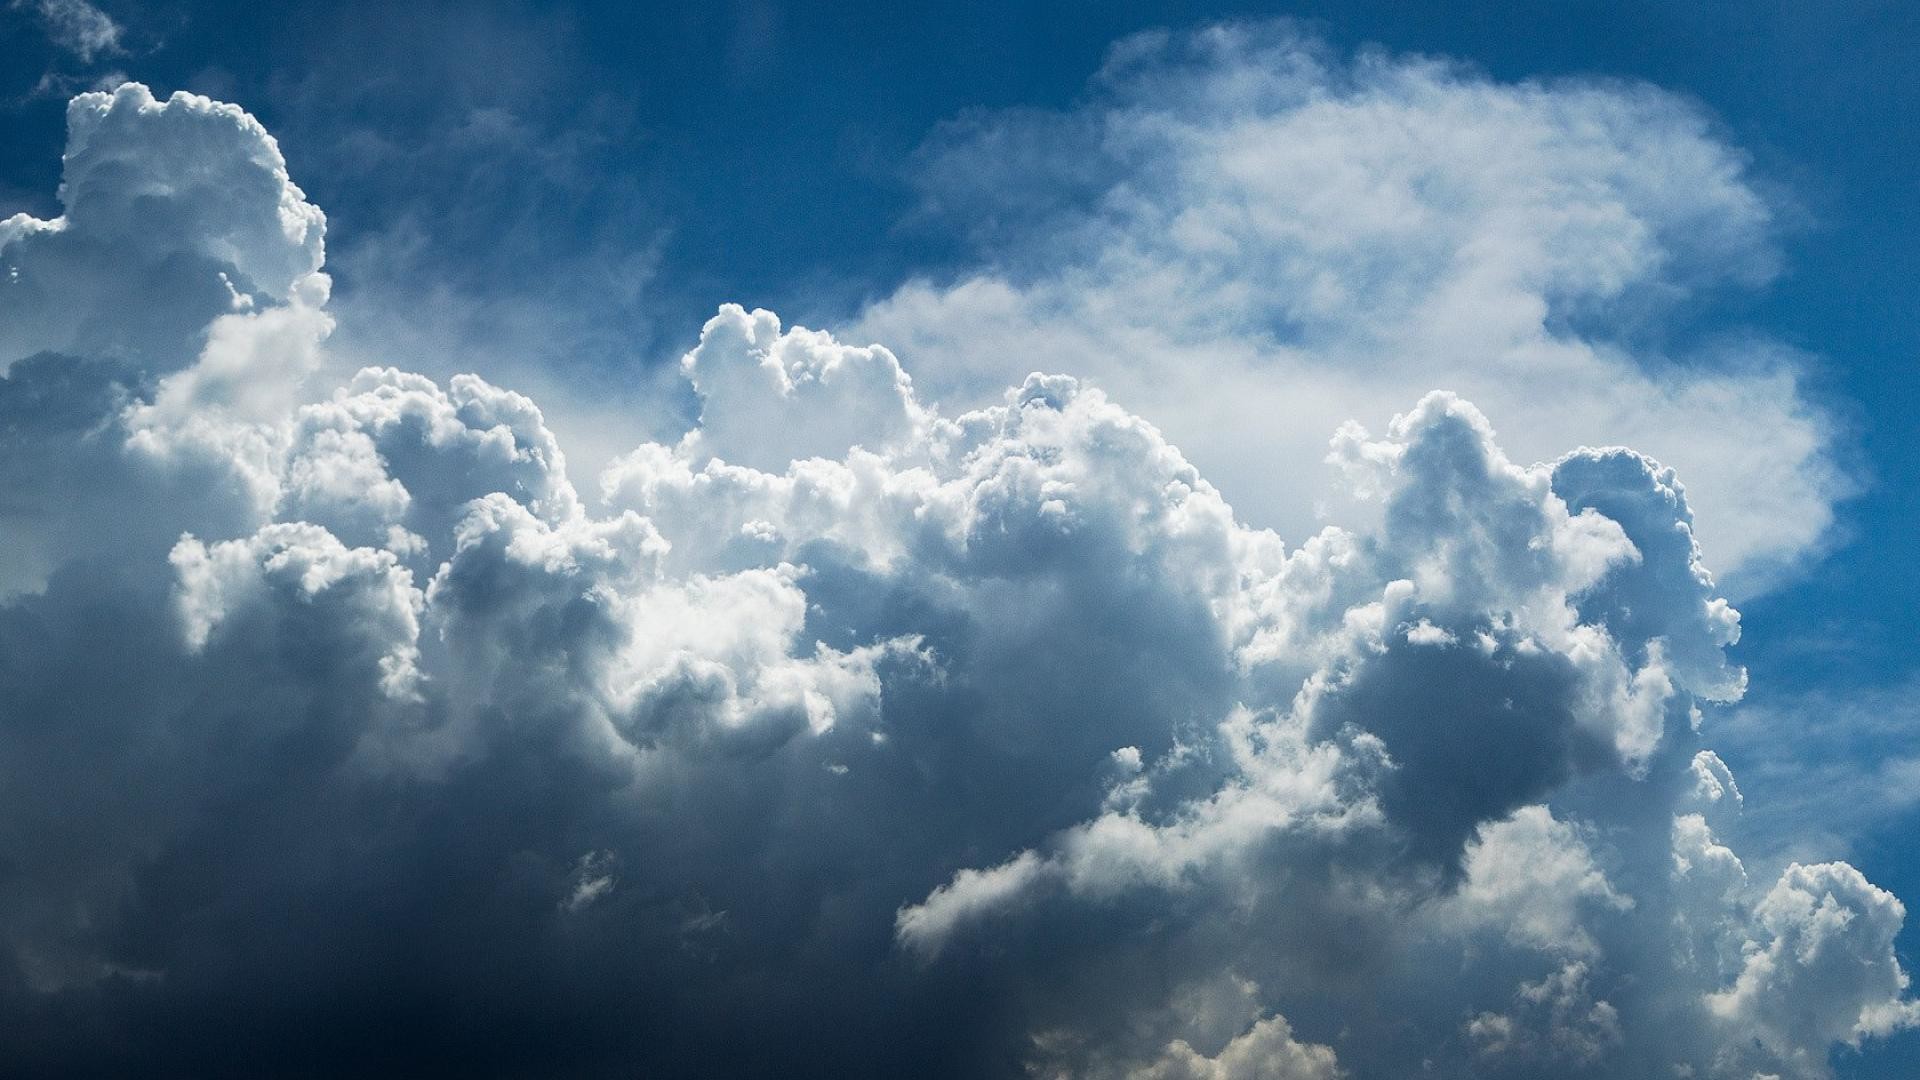 1920x1080 sky-clouds-sun-wallpaper-2.jpg (1920Ã1080) | NAND245 Infiniement grand |  Pinterest | Hd backgrounds, Cloud and Blue sky clouds